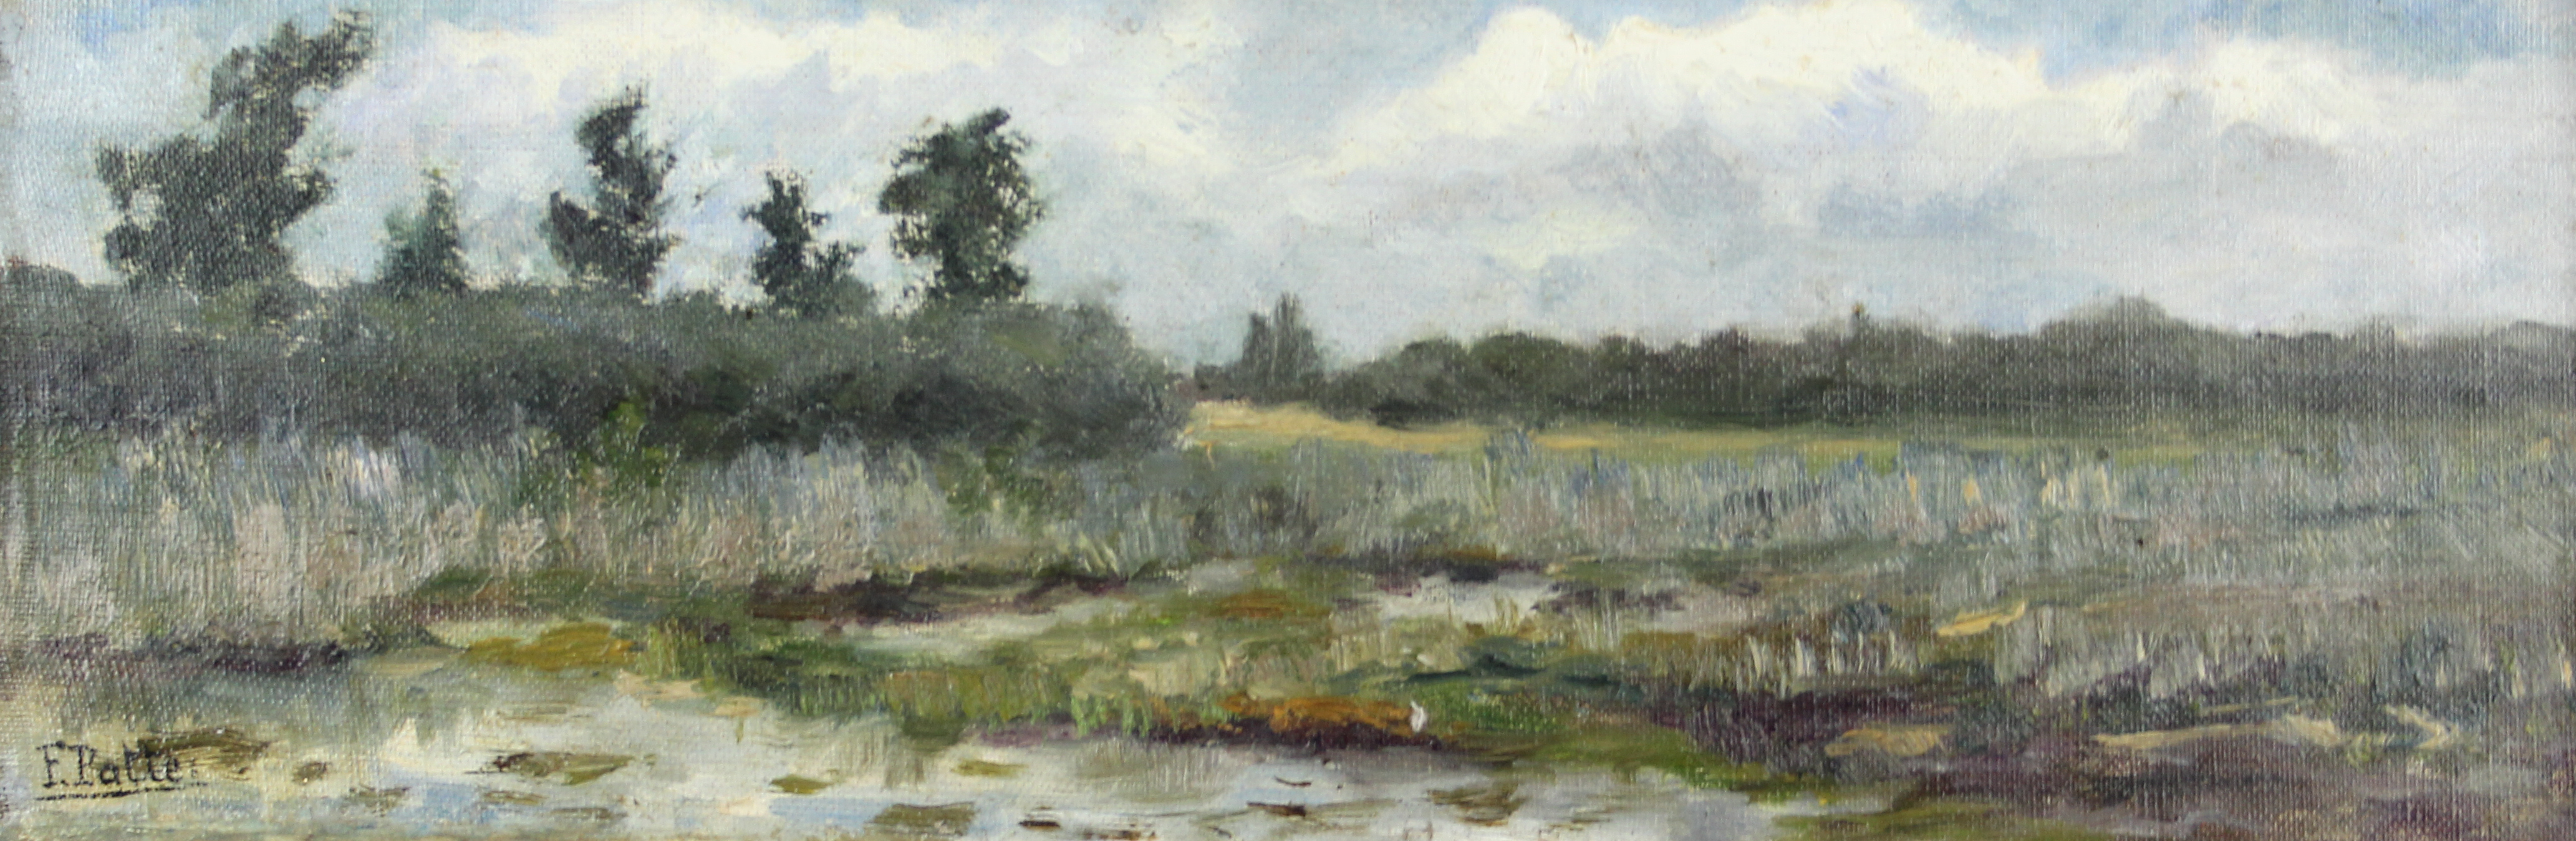 tableau La fagne Patte Fernand paysage  huile marouflé 1ère moitié 20e siècle